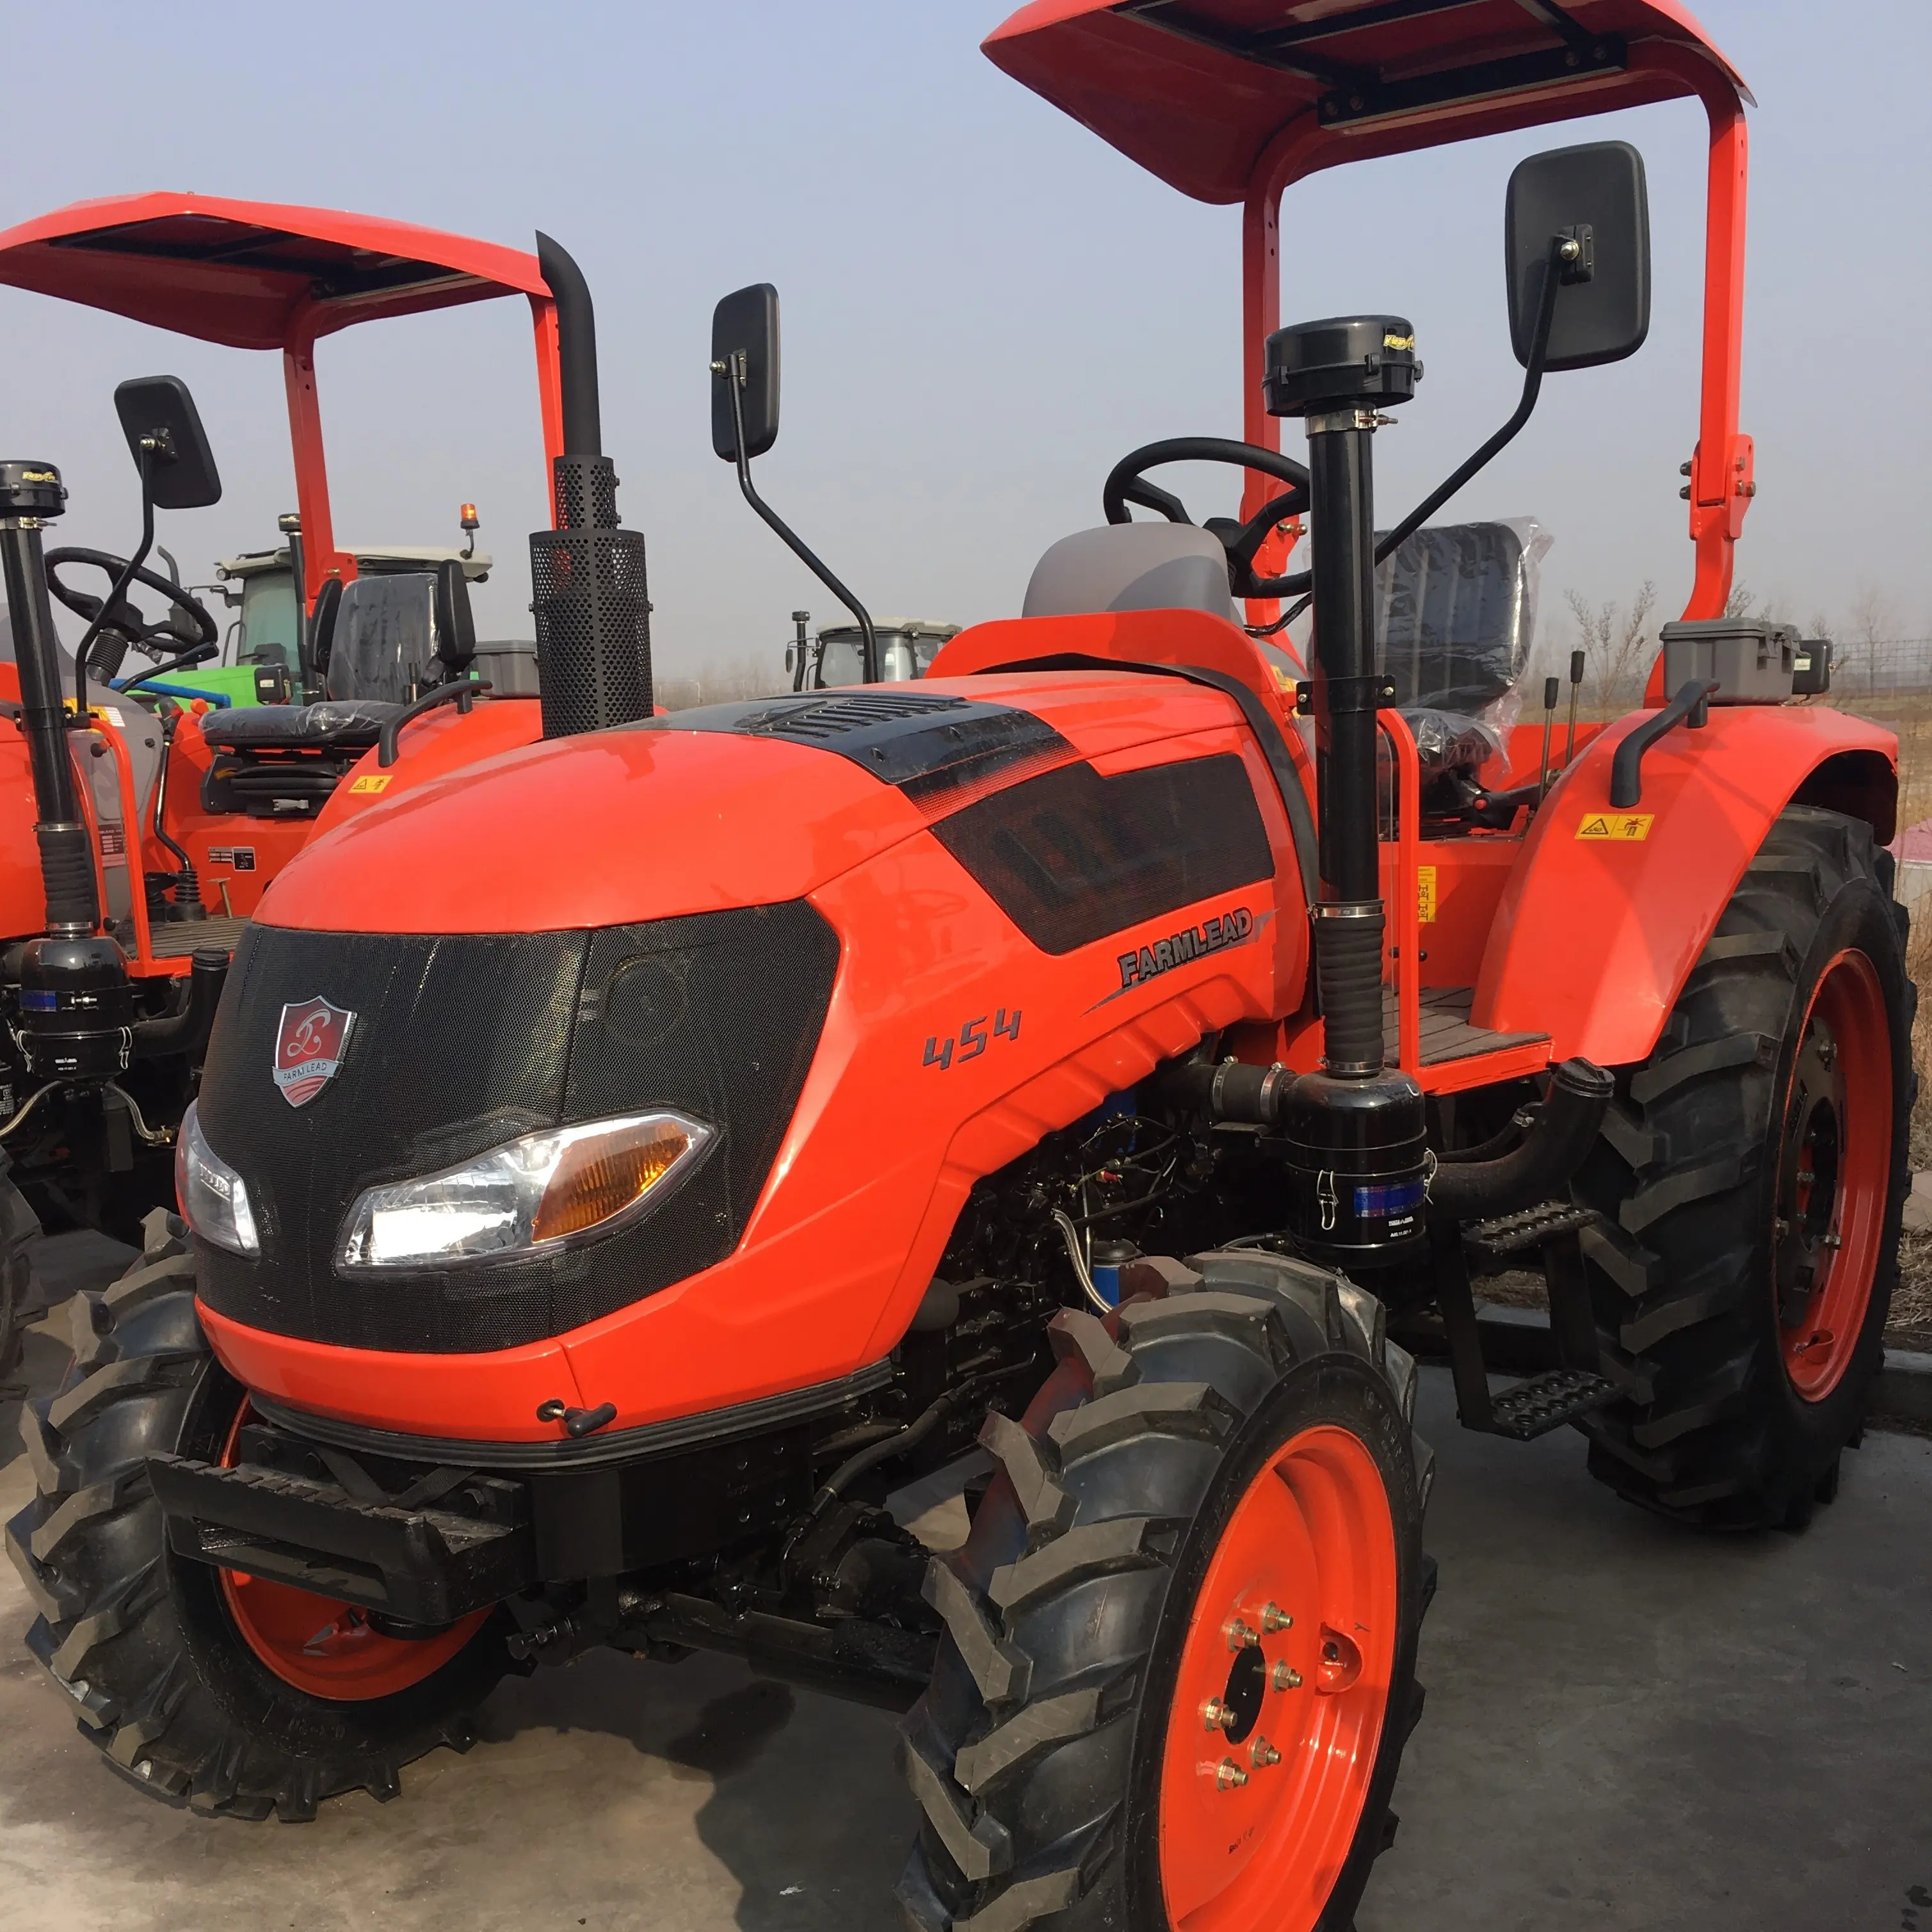 Mini Tractor agricola multifuncional, maquina de Agricultura, 55 HP 4WD